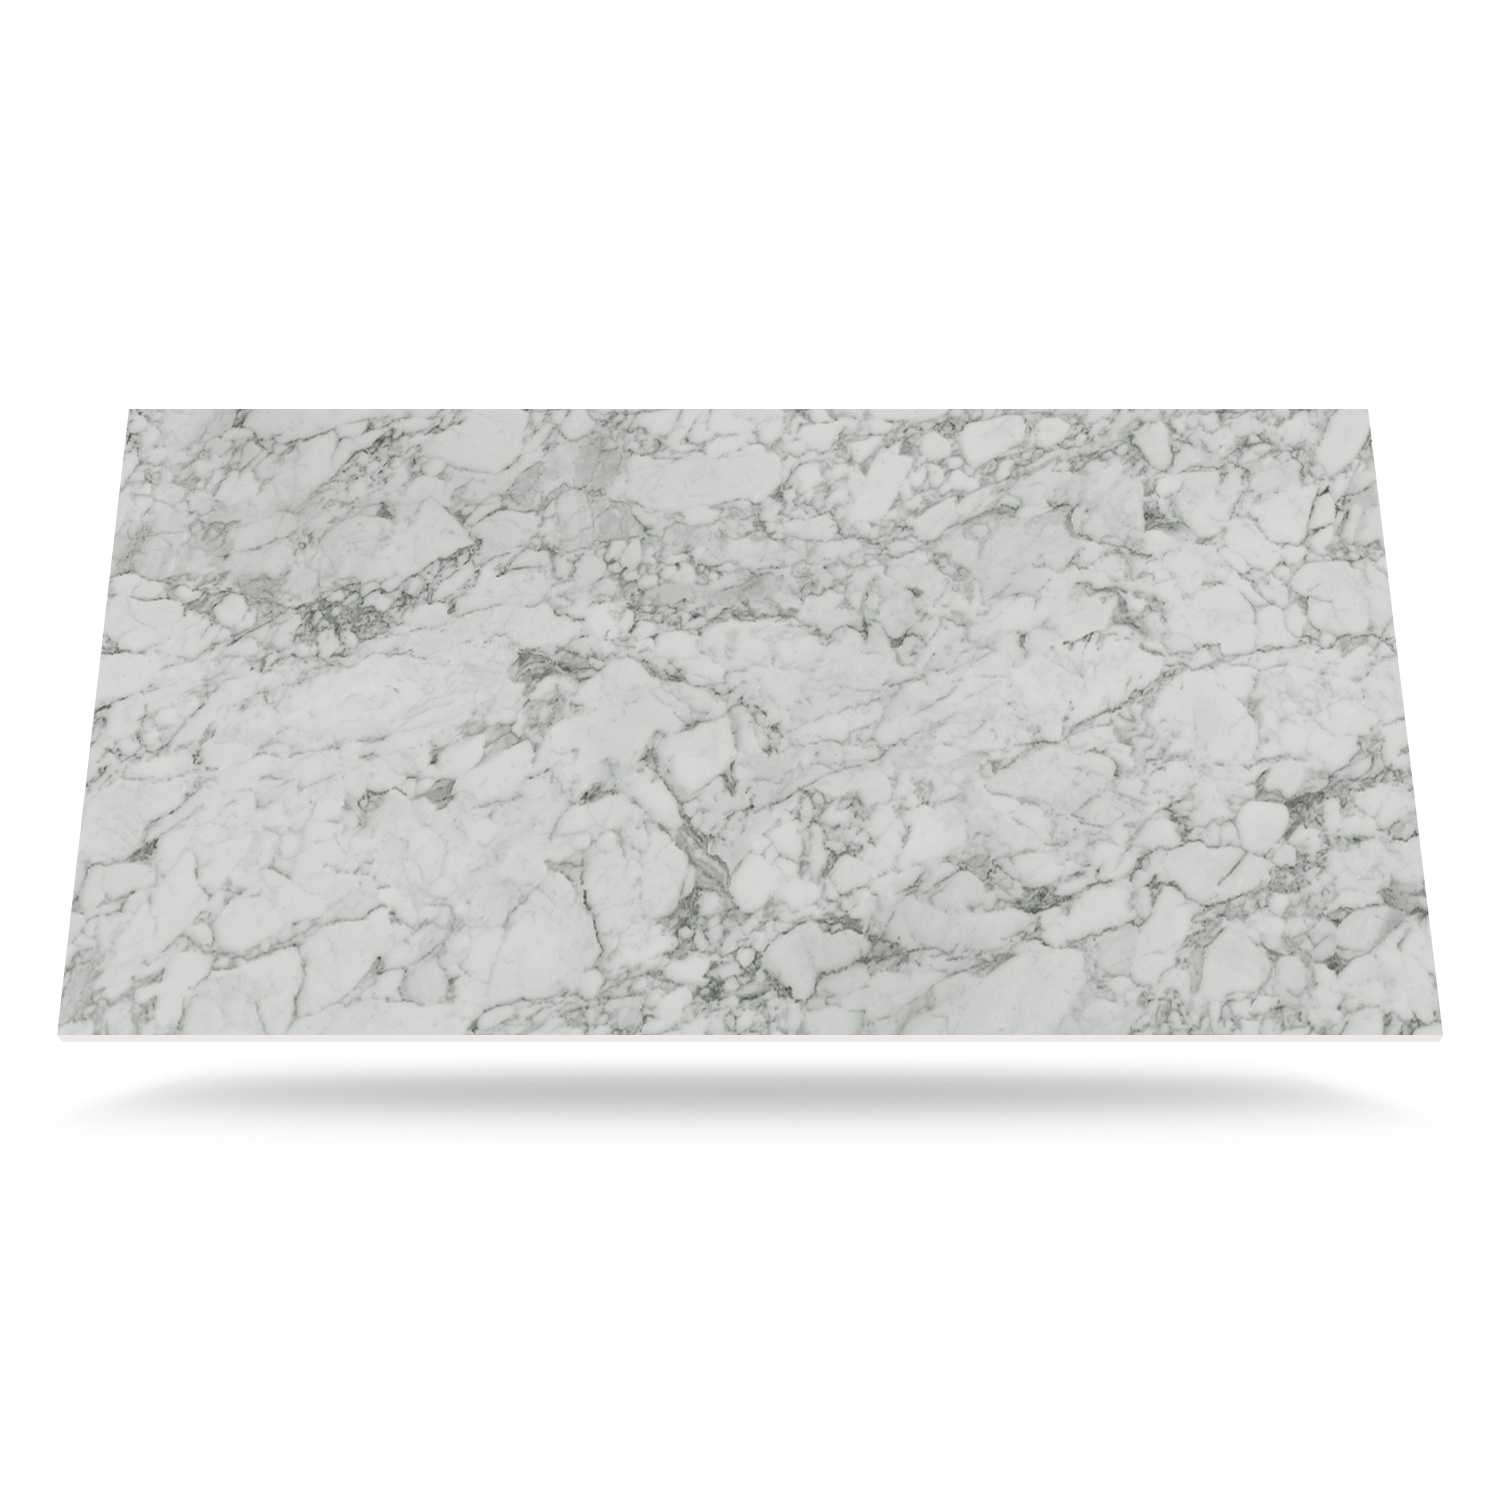 DU S63009 CM Carrara Marmor med kärna Kompaktlaminat bordsskiva på mål